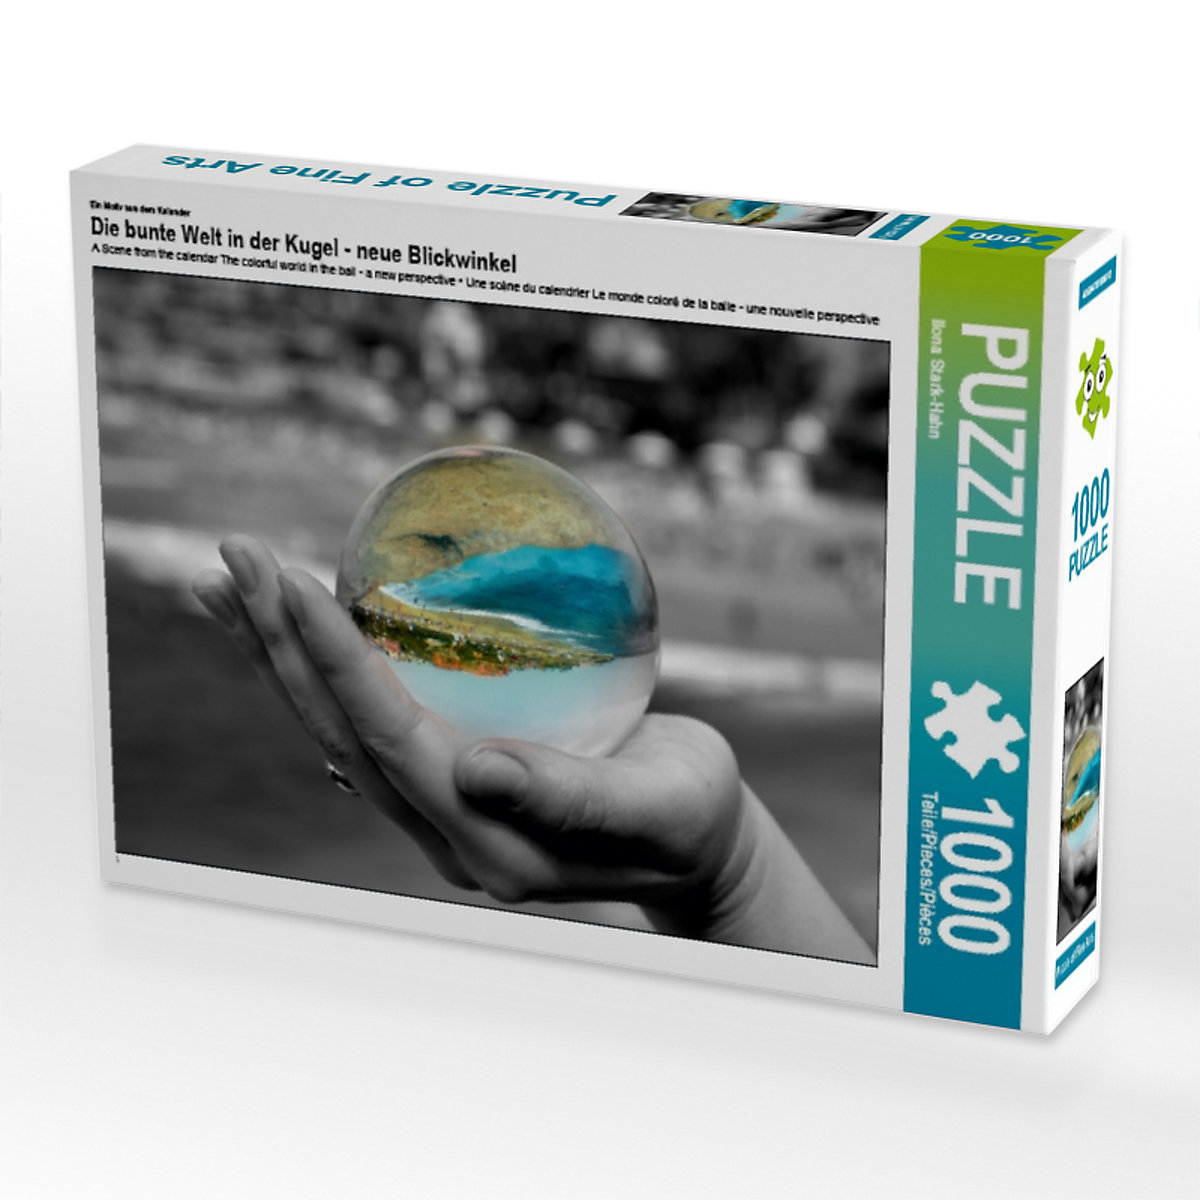 CALVENDO® Puzzle CALVENDO Puzzle Die bunte Welt in der Kugel neue Blickwinkel 1000 Teile Foto-Puzzle für glückliche Stunden